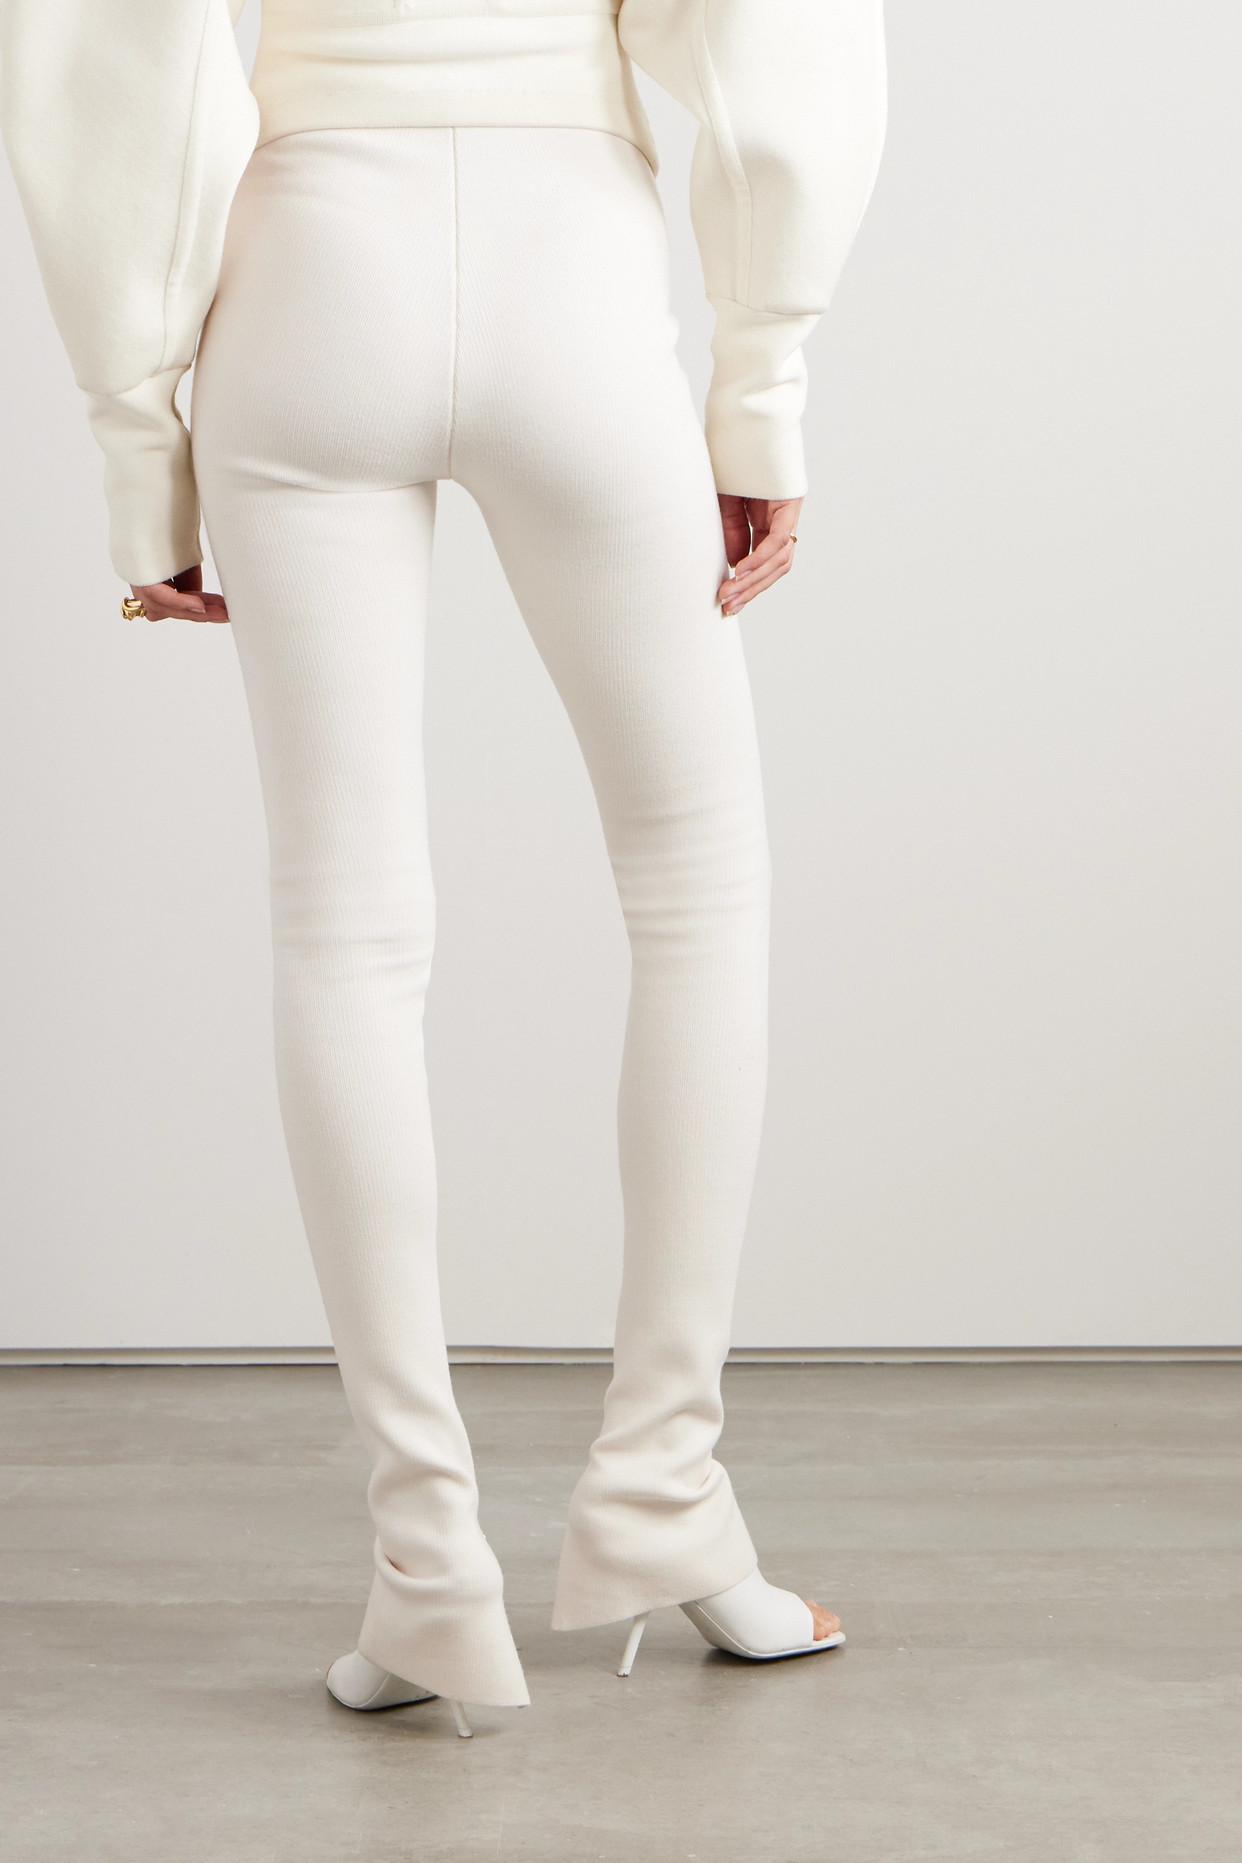 White flared leggings